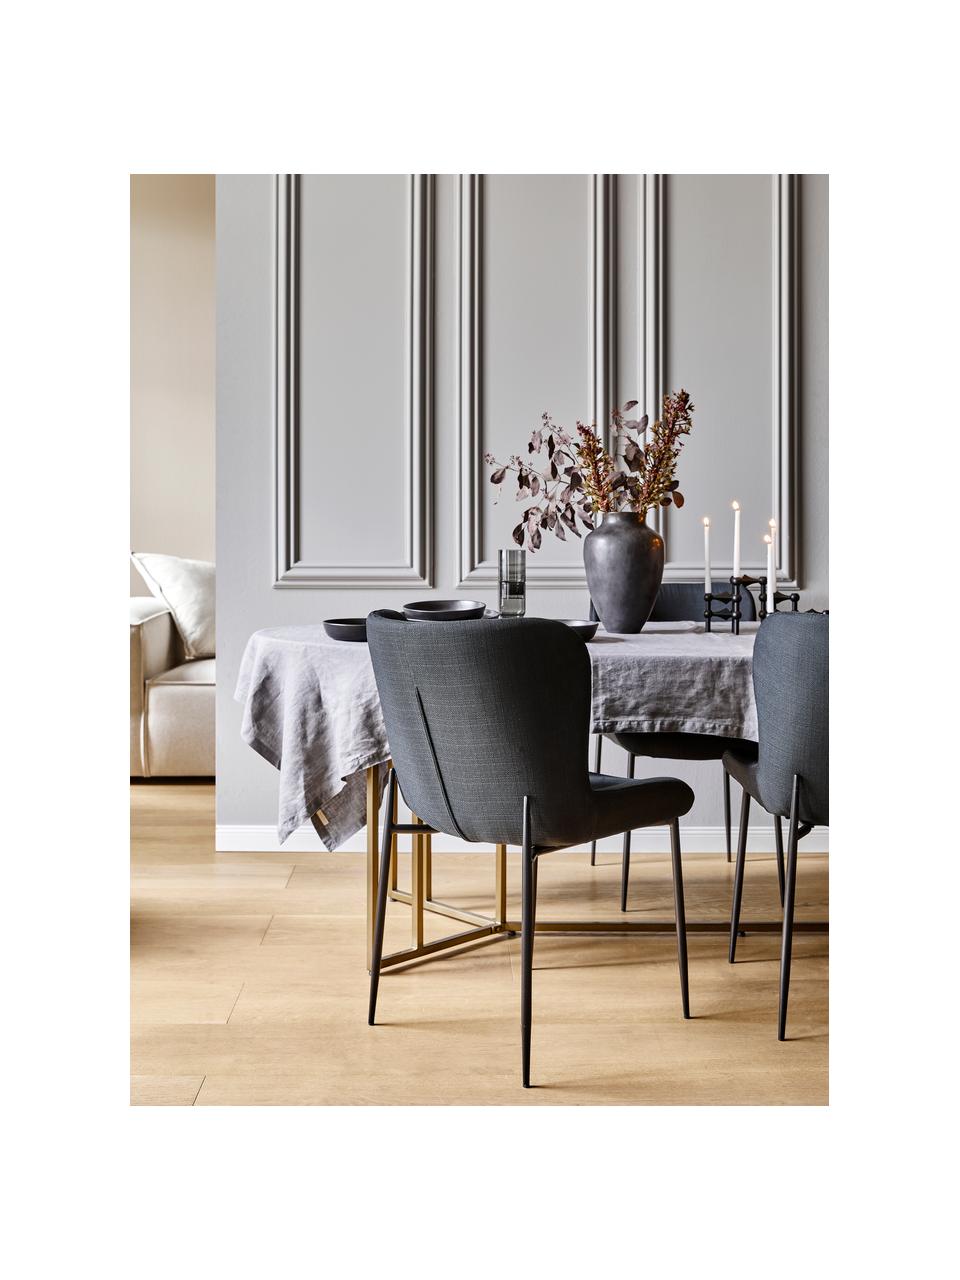 Gestoffeerde stoel Tess in zwart, Bekleding: polyester, Poten: metaal, gepoedercoat, Geweven stof zwart, poten zwart, B 49 x D 64 cm